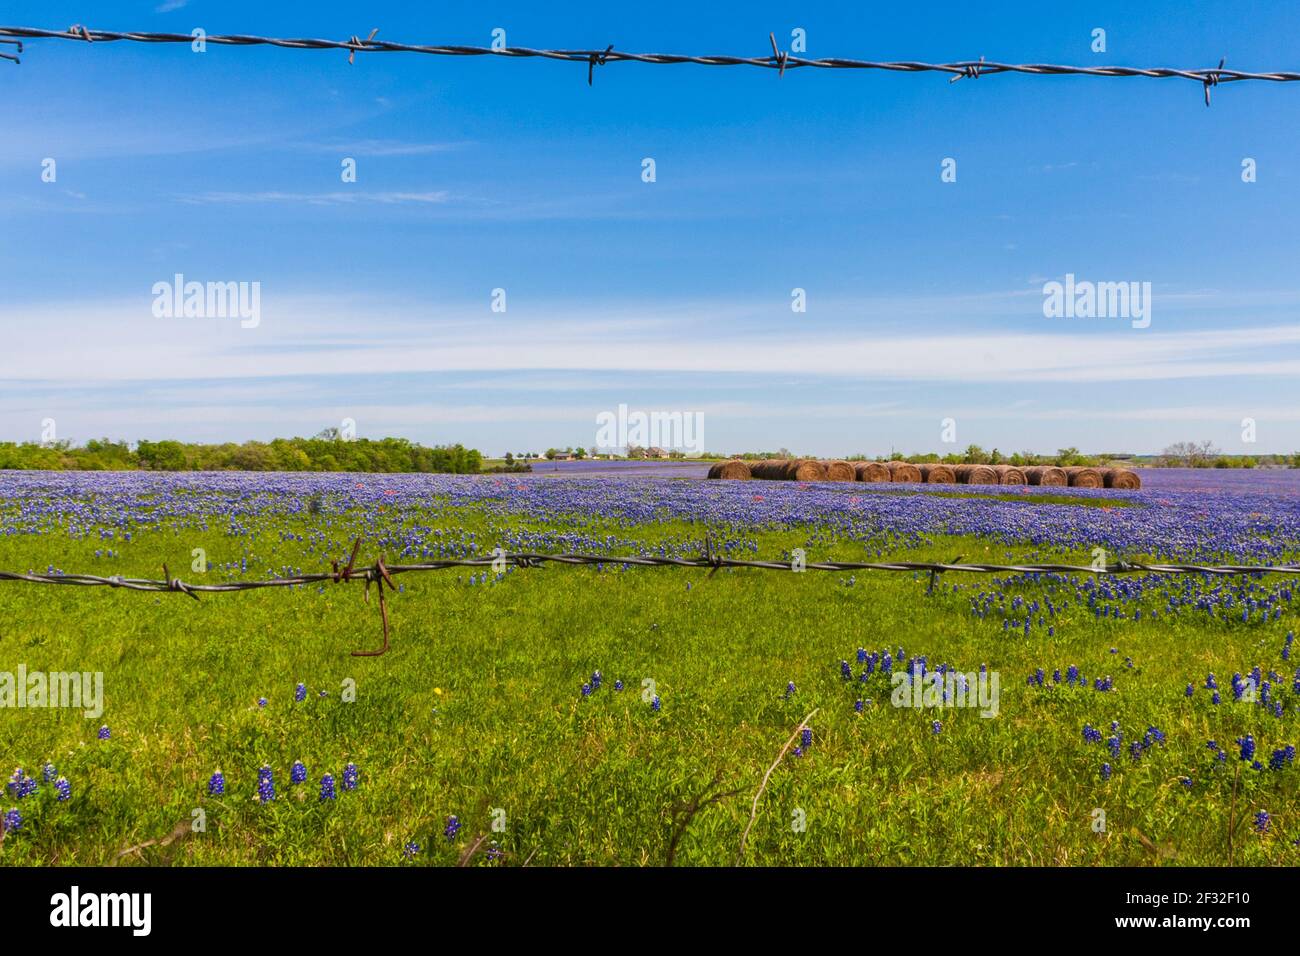 Un campo de Texas Bluebonnets, Lupinus texensis, con fardos de heno en un rancho a lo largo de la carretera Texas 382 cerca de Whitehall, Texas. Foto de stock